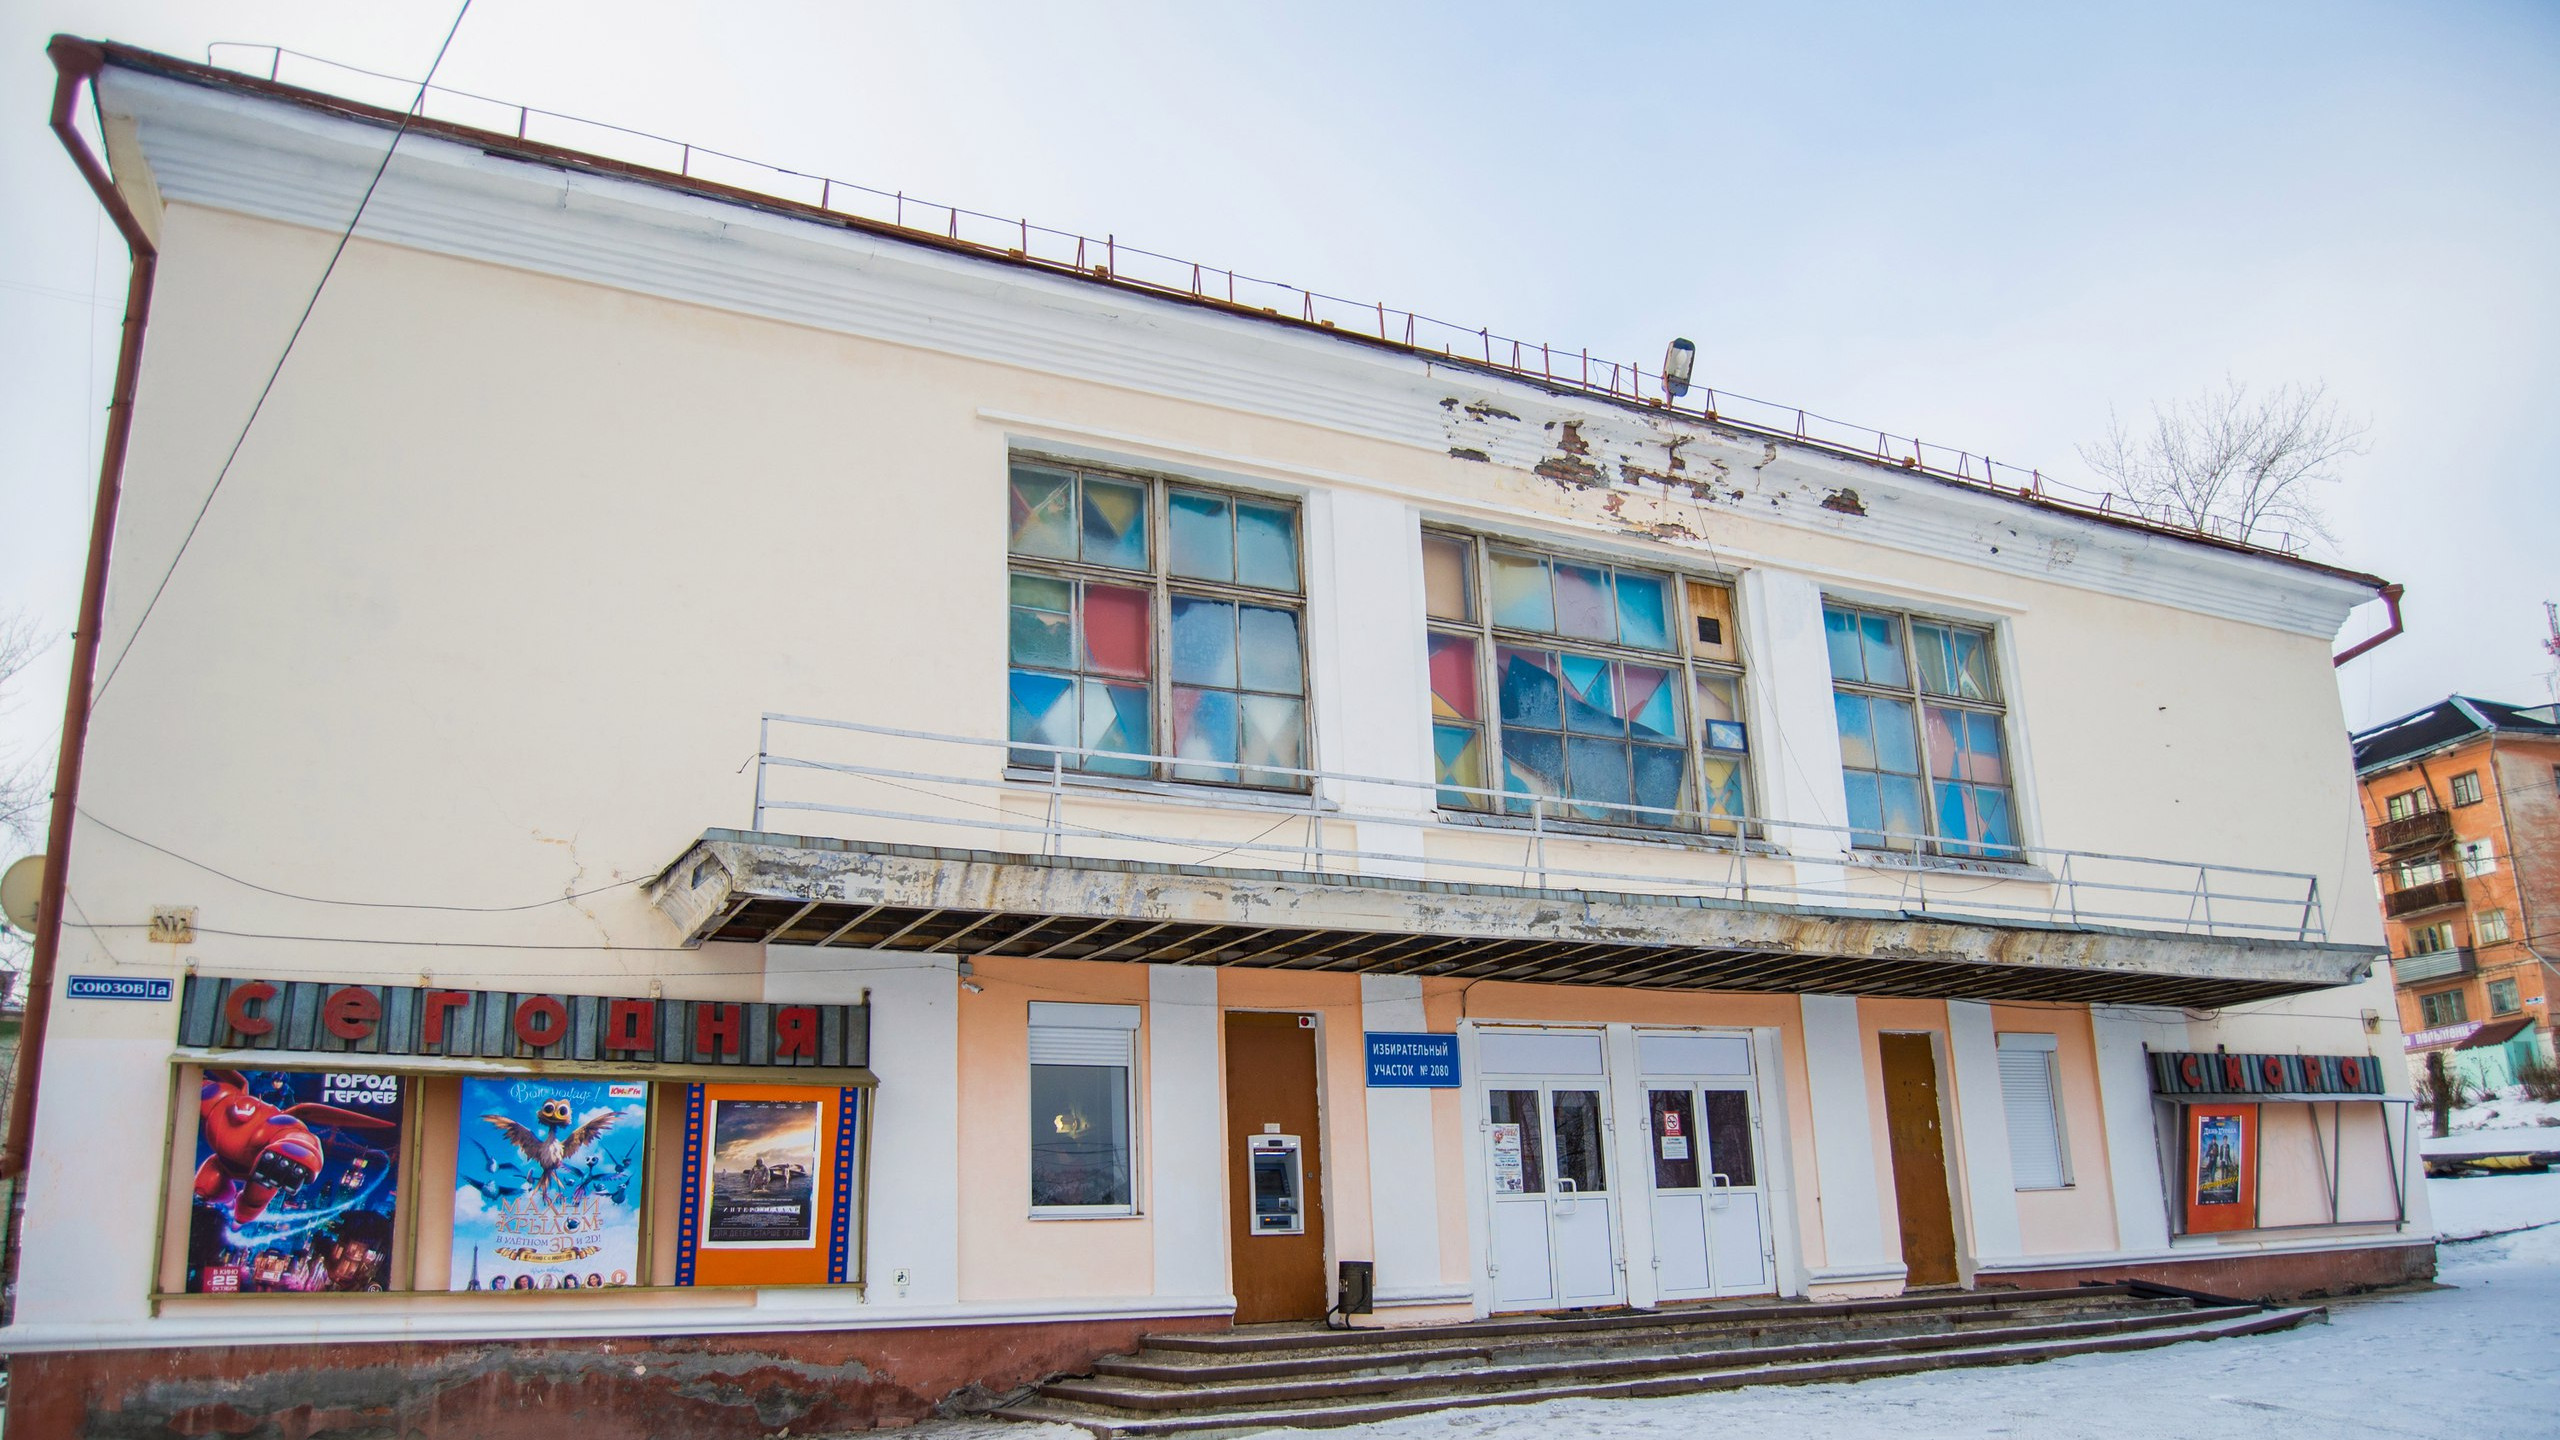 Кинотеатр "Феникс" в г. Кушва на ул. Кооперативная, 77 (кинозал на 60 посадочных мест)